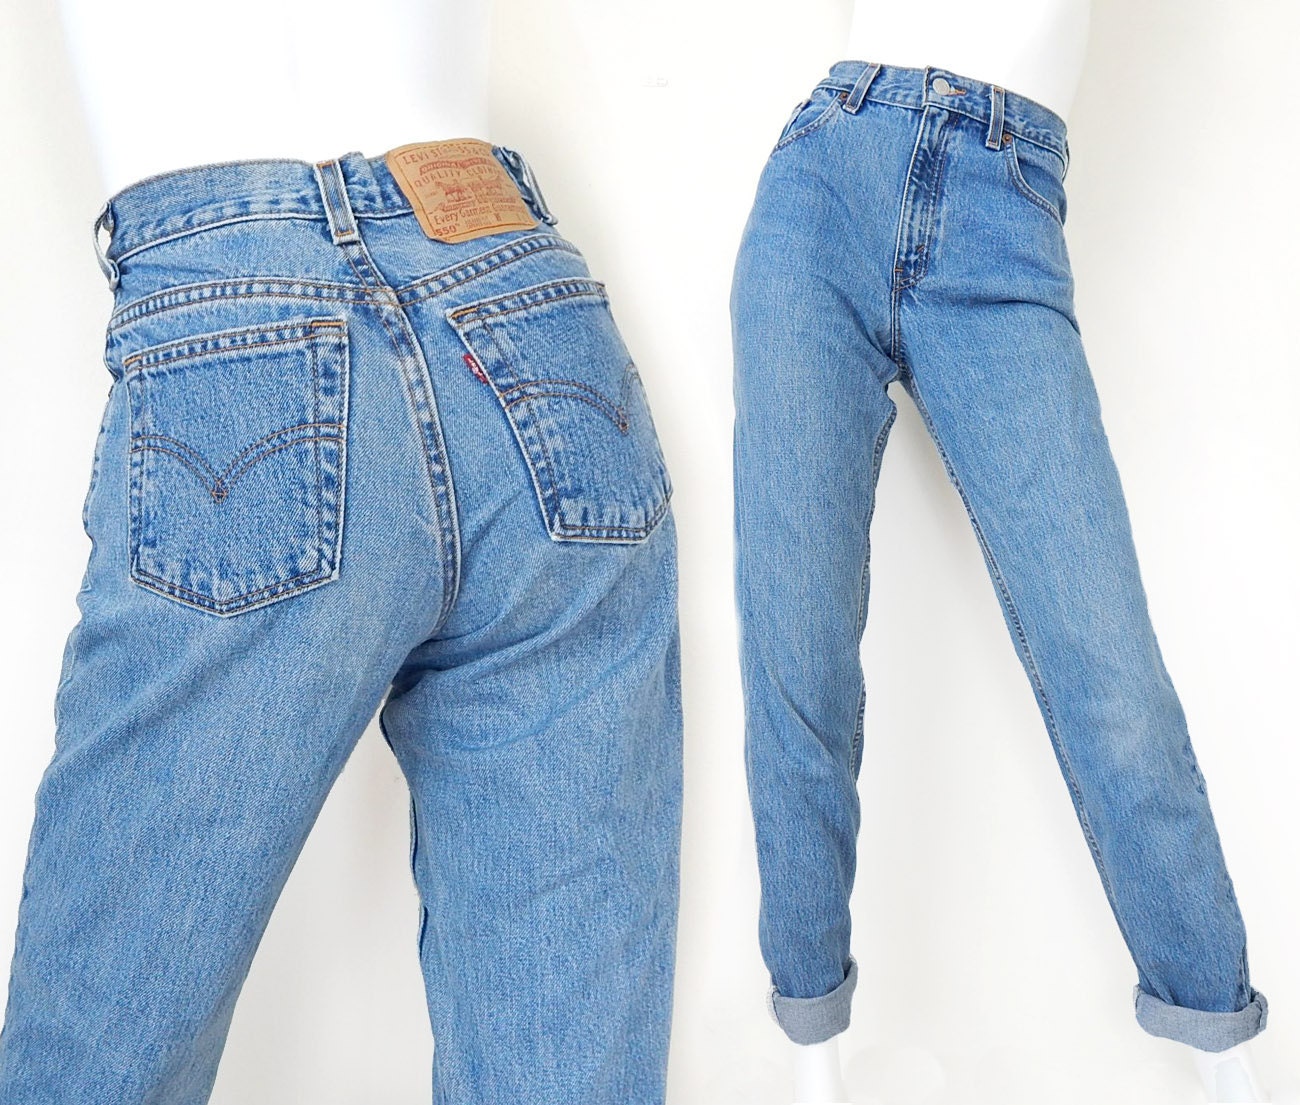 Vintage Levis 550 High Waist Women's Jeans Size 5 LONG